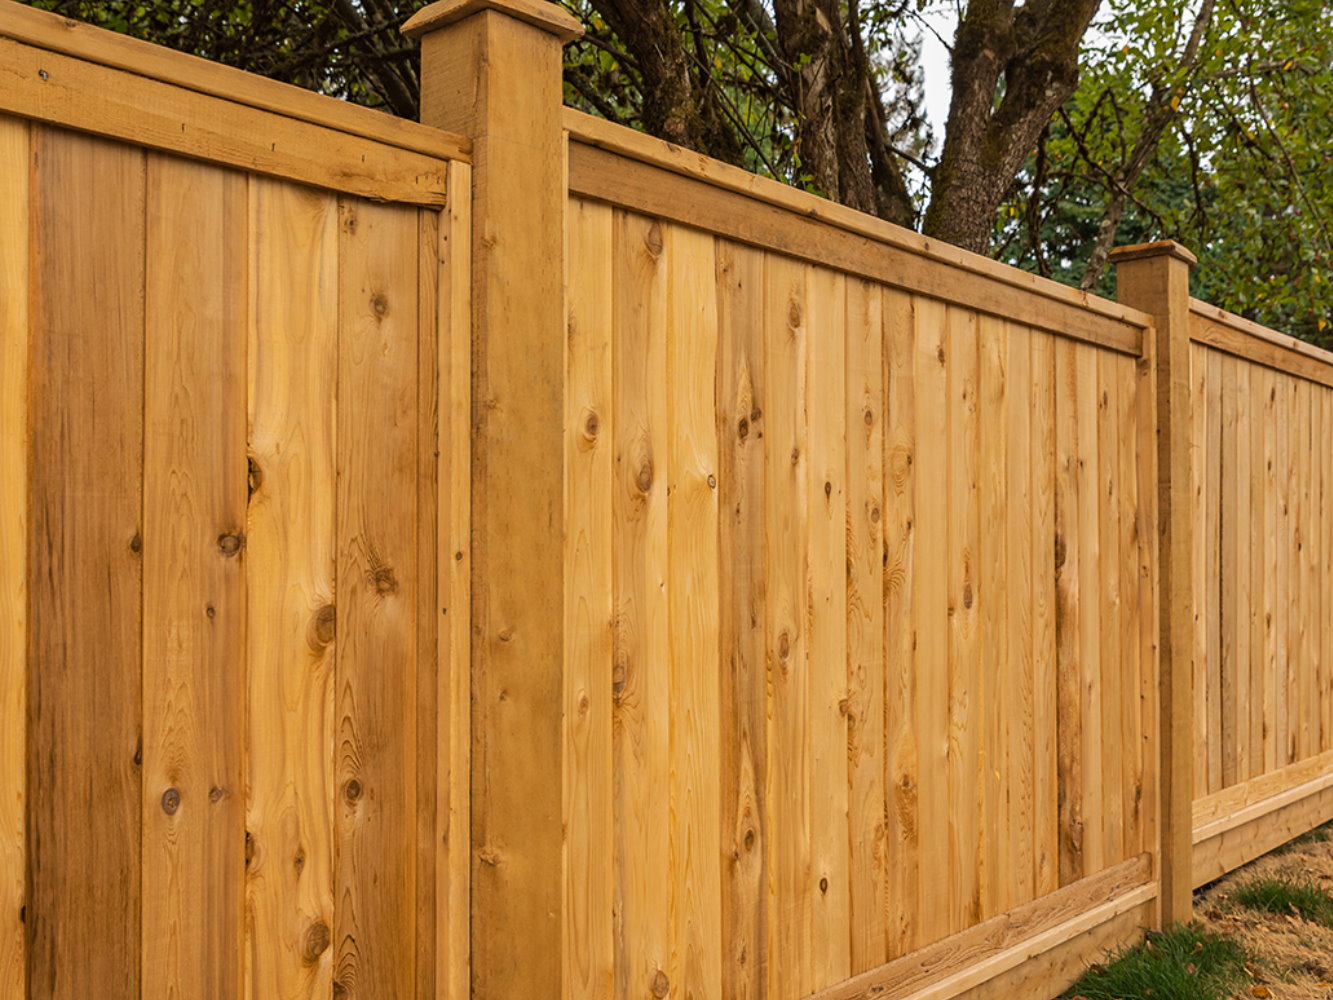 Goochland VA cap and trim style wood fence